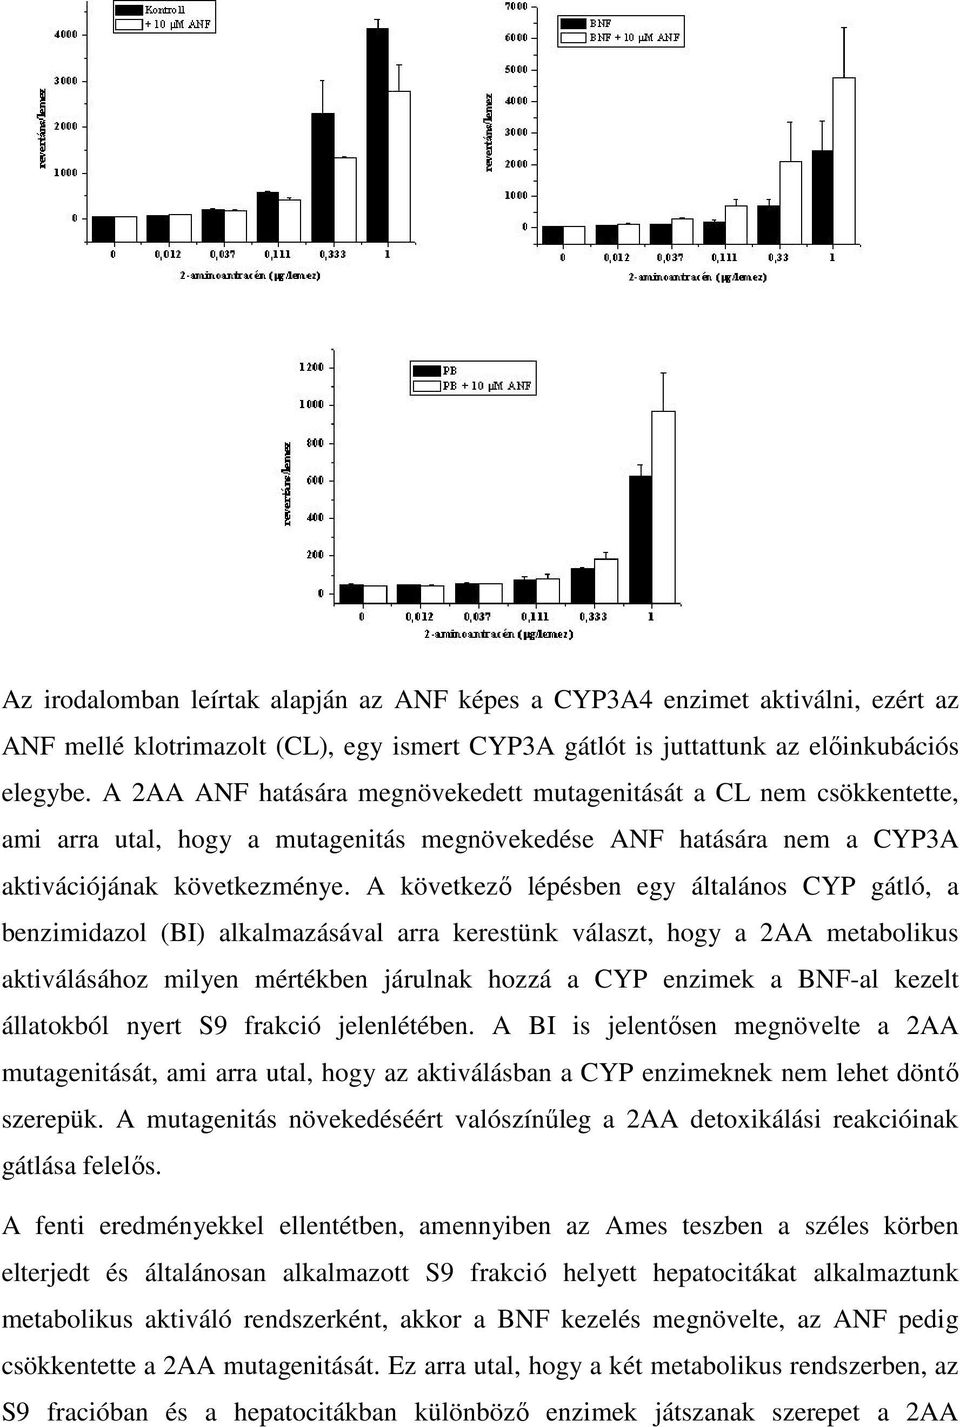 A következő lépésben egy általános CYP gátló, a benzimidazol (BI) alkalmazásával arra kerestünk választ, hogy a 2AA metabolikus aktiválásához milyen mértékben járulnak hozzá a CYP enzimek a BNF-al